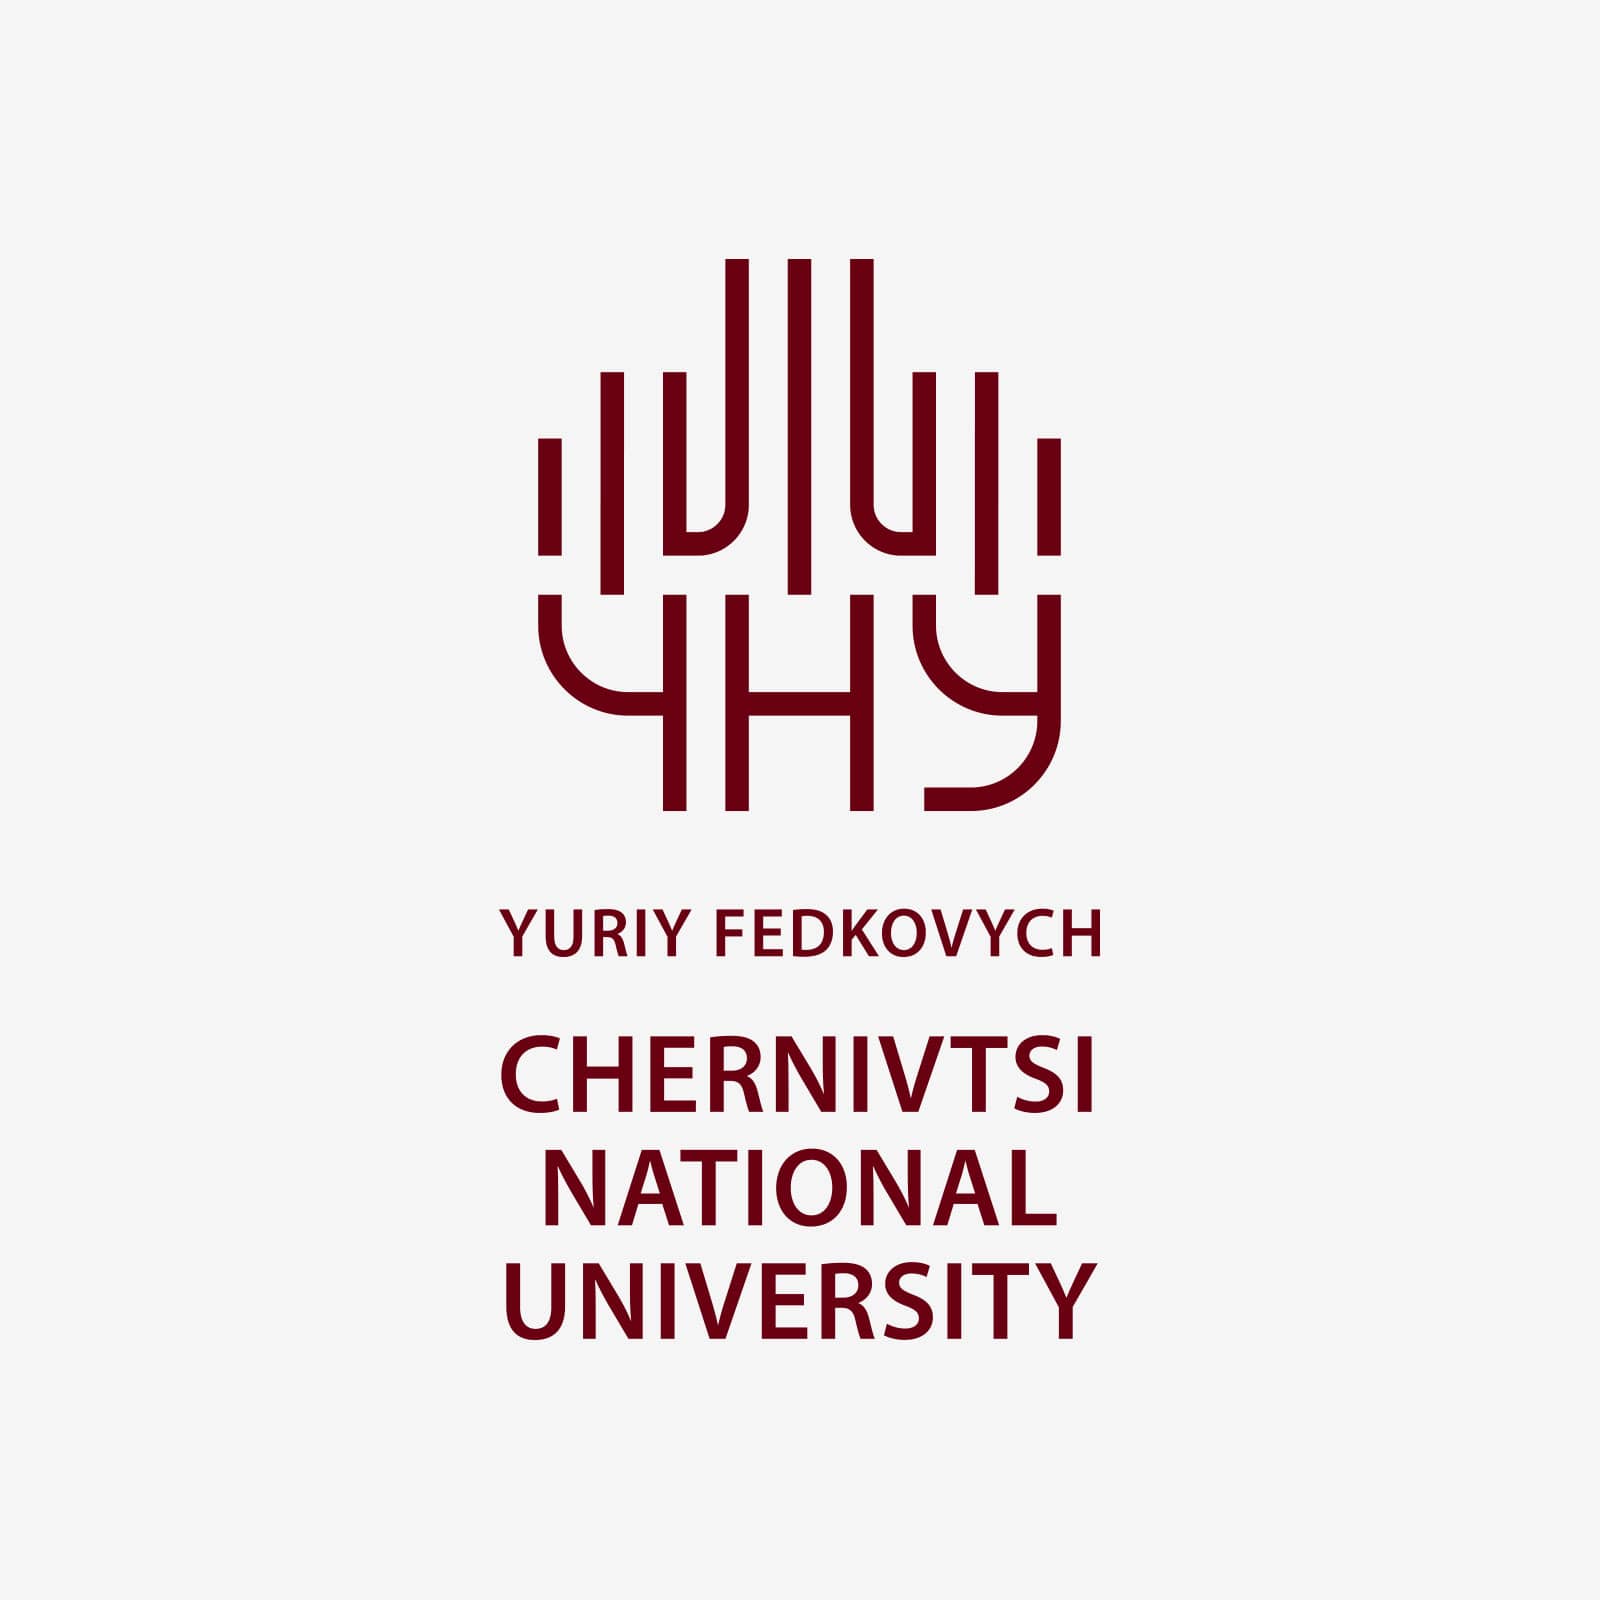 Yuriy Fedkovych Chernivtsi National University Logo